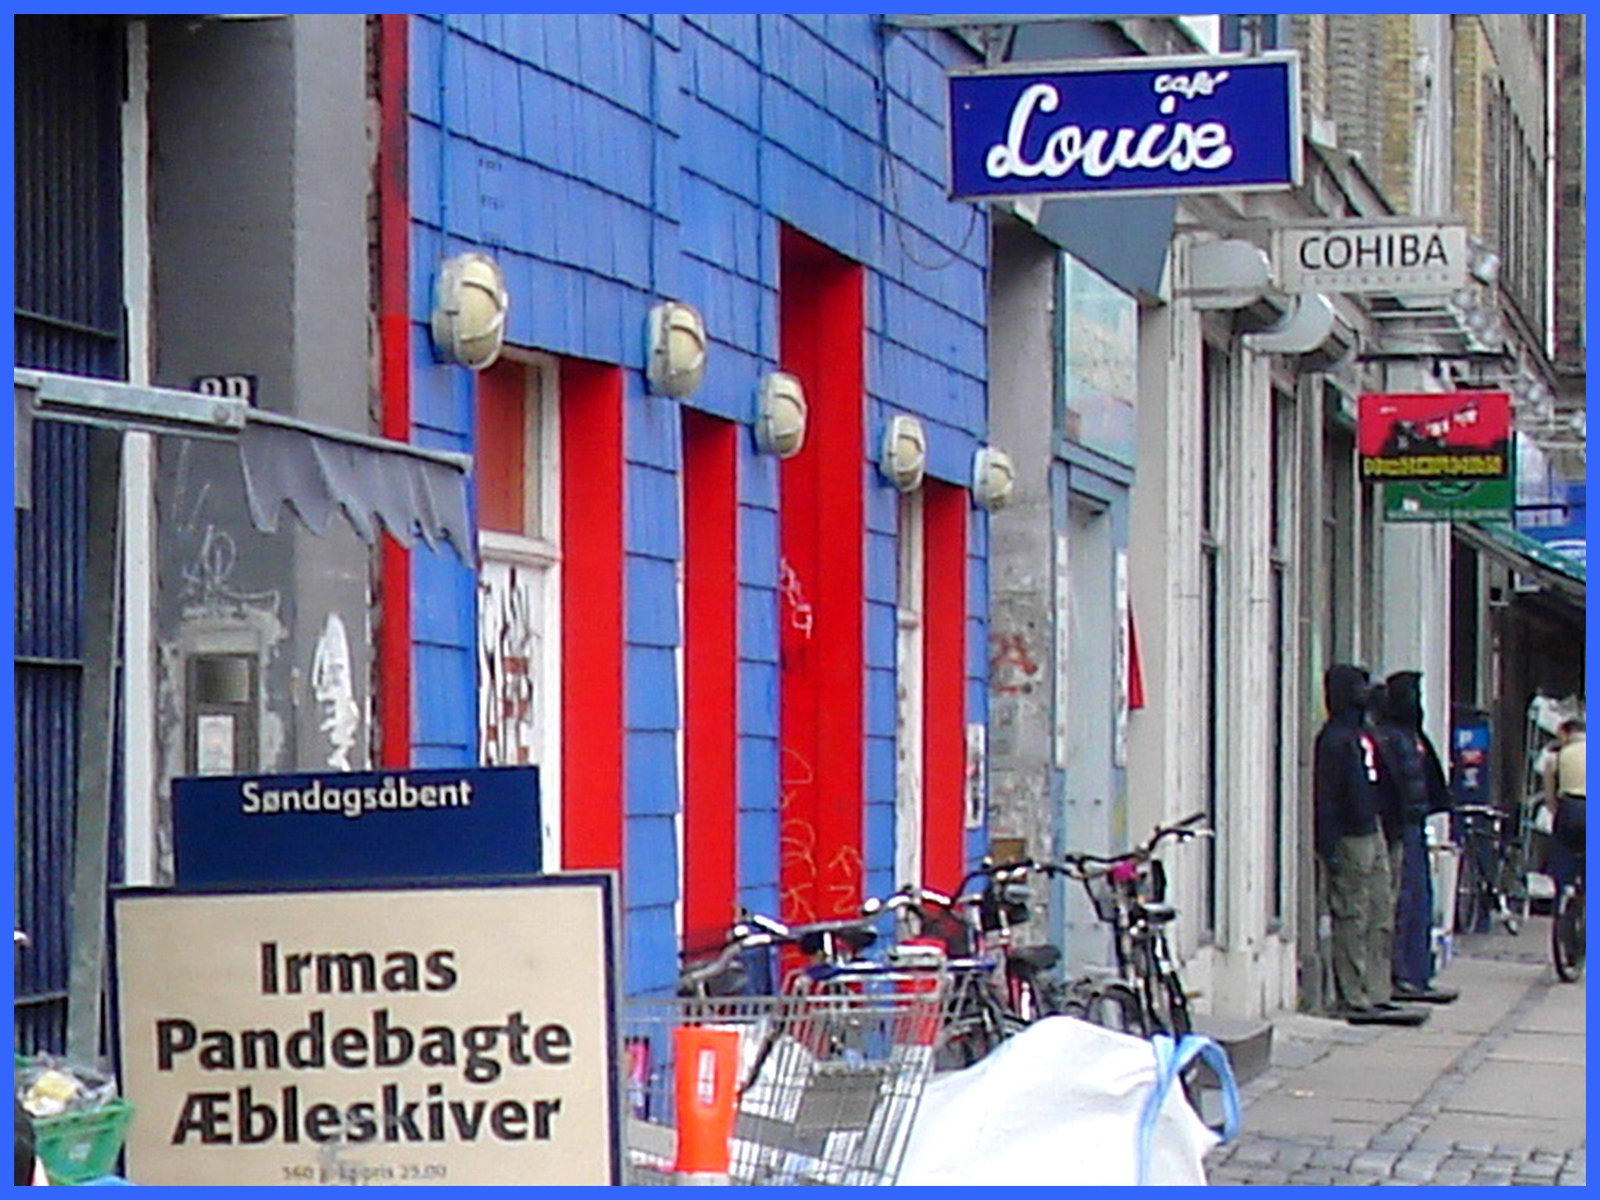 La perspective Louise /  Louise store area -  Copenhague, Danemark.  20 octobre 2008